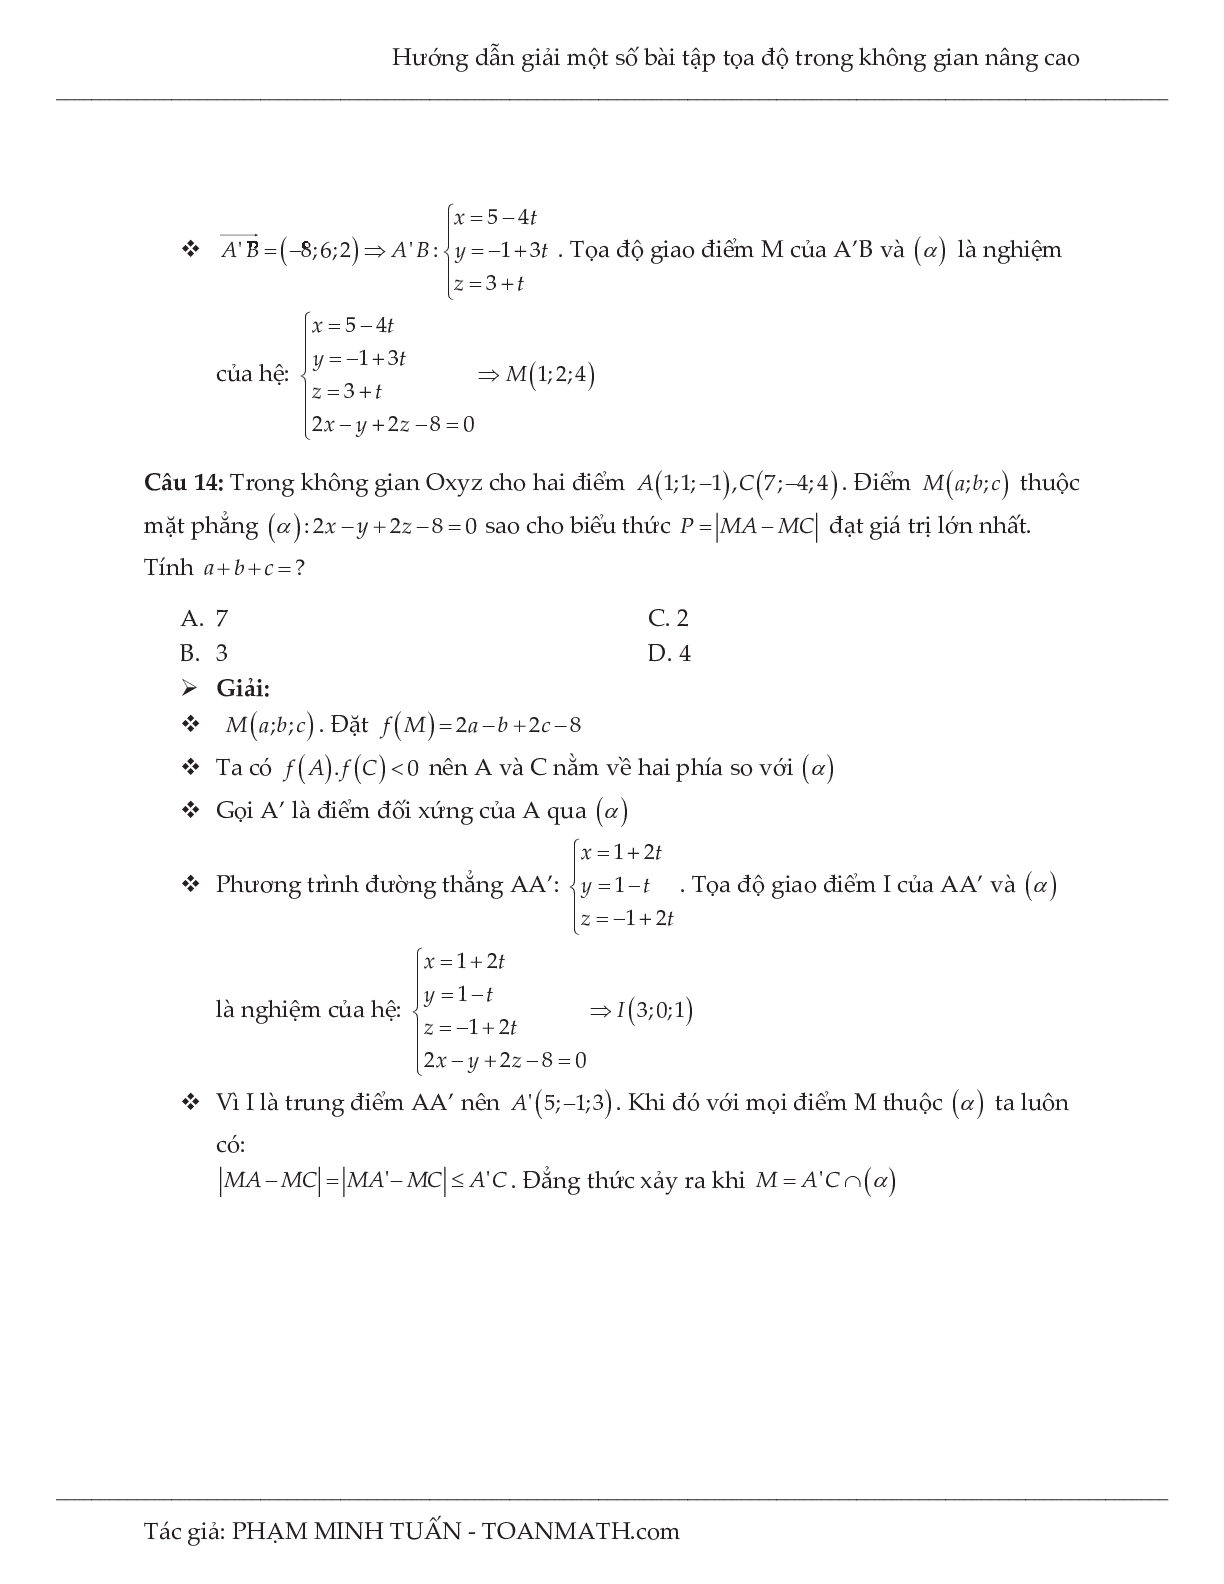 Hướng dẫn giải một số bài tập tọa độ trong không gian nâng cao môn Toán lớp 12 (trang 9)